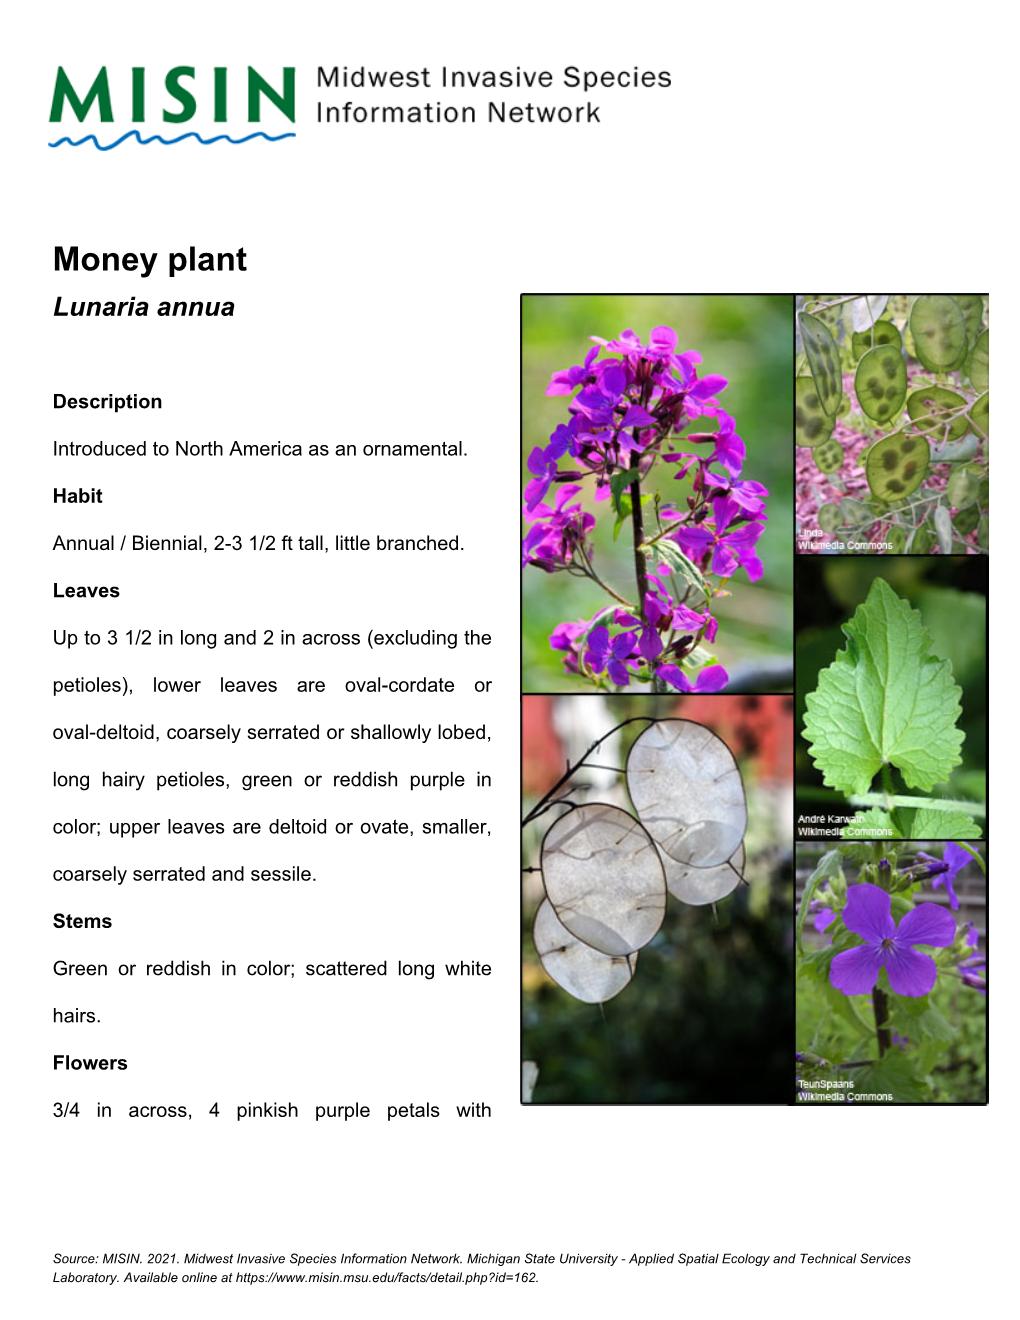 Money Plant Lunaria Annua